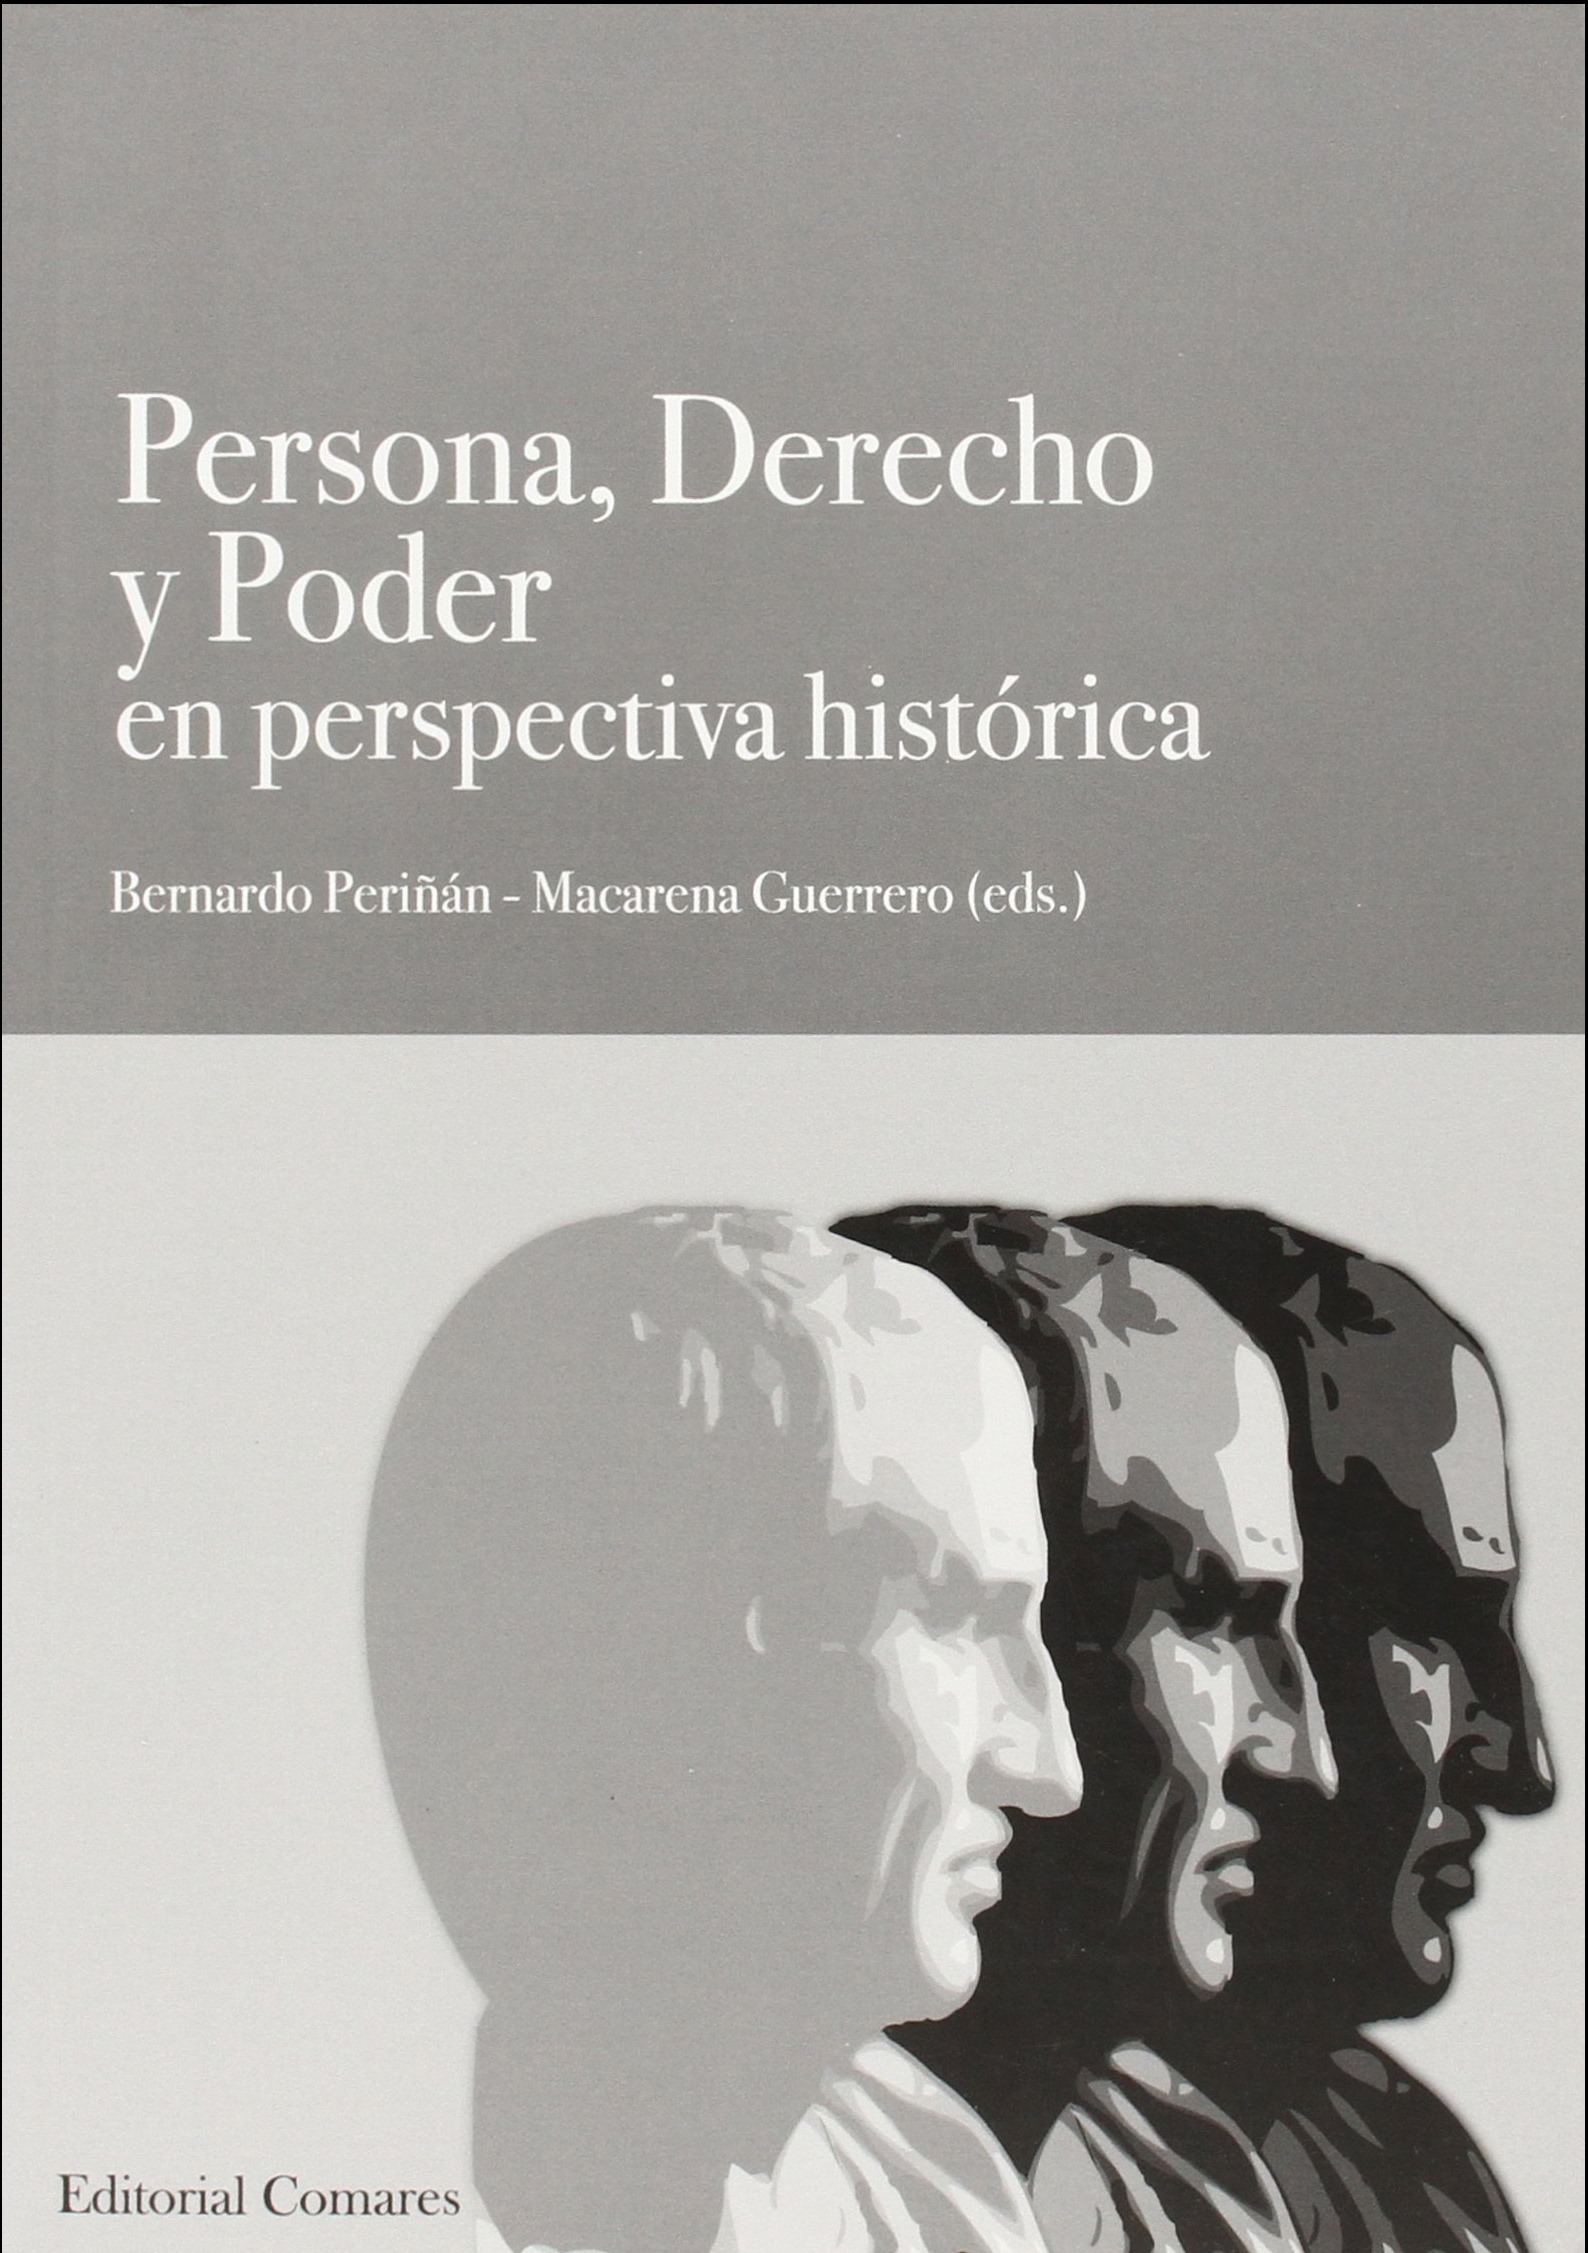 Imagen de portada del libro Persona, derecho y poder en perspectiva histórica